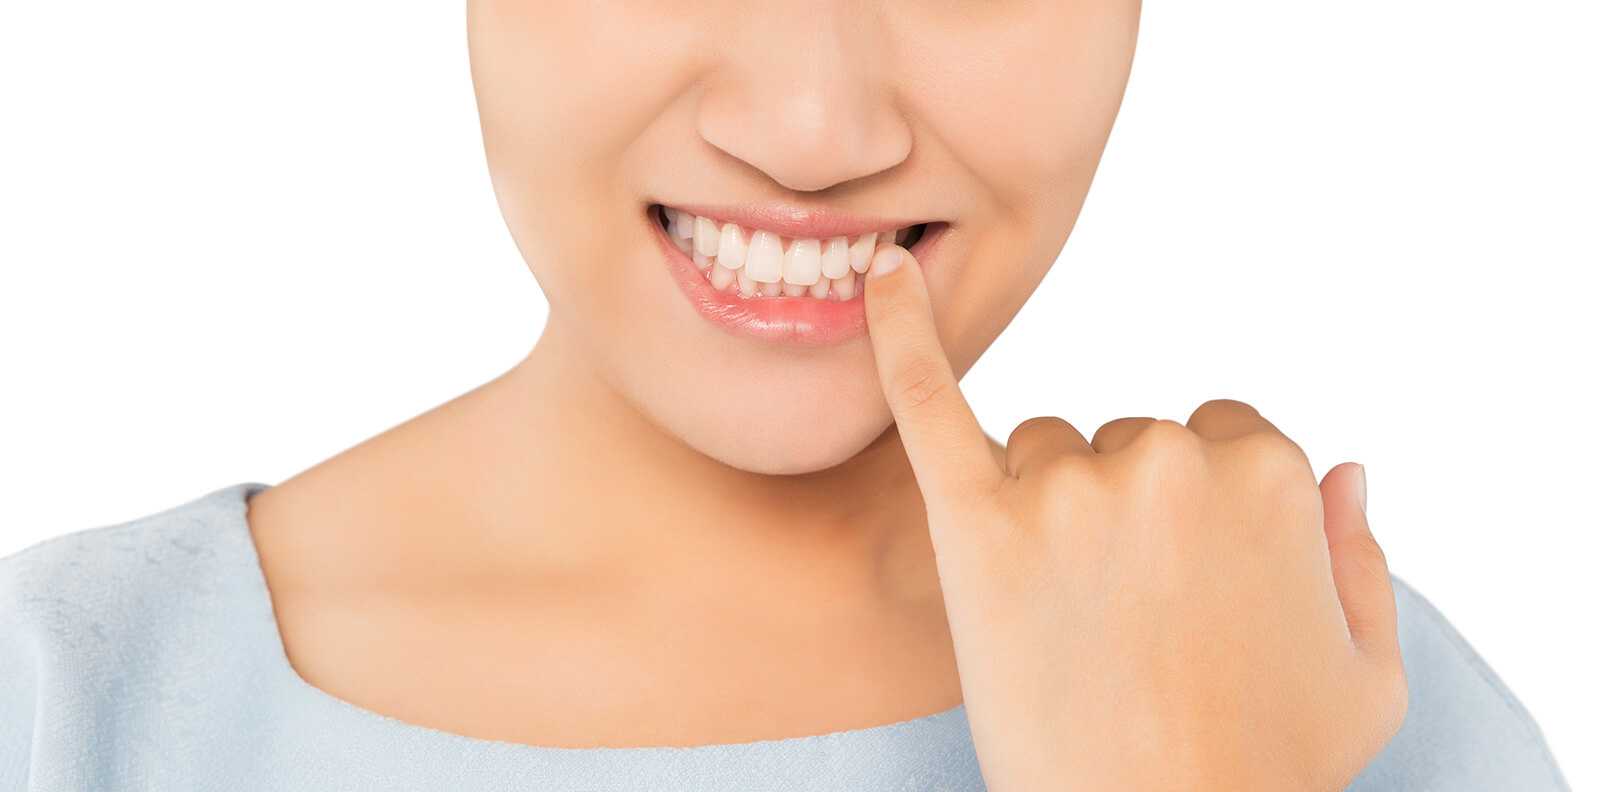 Причины подвижности зубов. Рассказывает стоматолог Капил Кхурана